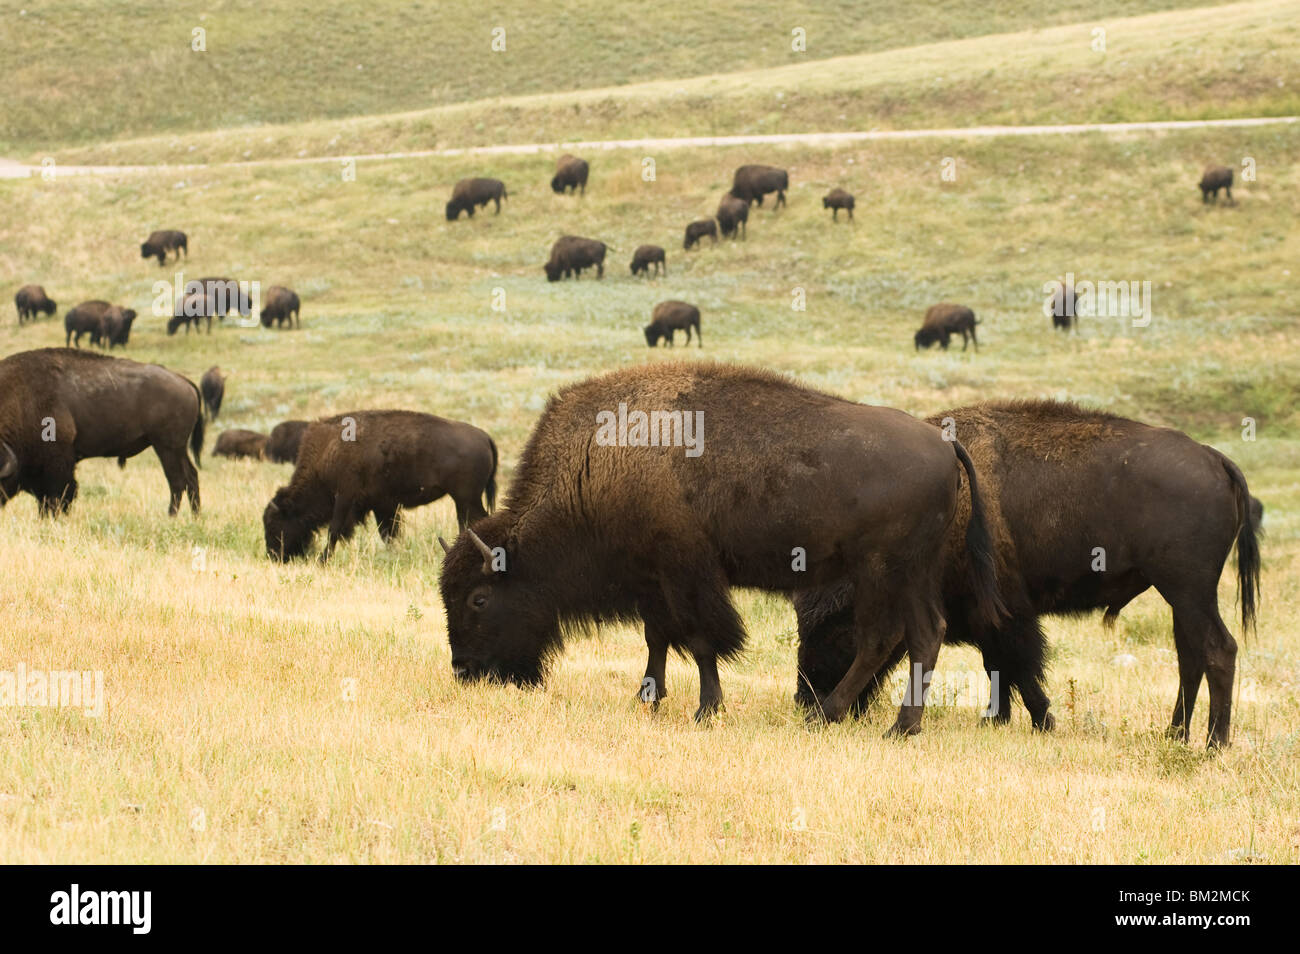 El pastoreo de búfalos americanos Foto de stock